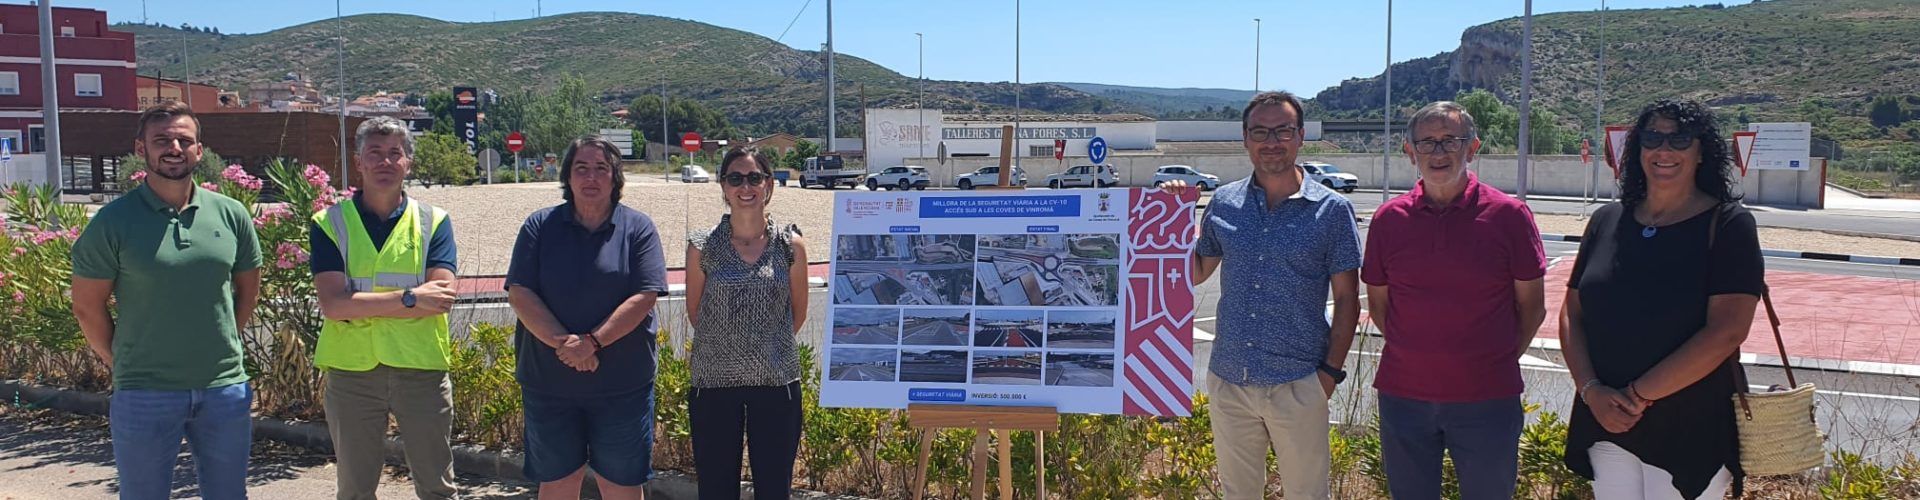 Obras Públicas incrementa la seguridad vial en el cruce de la CV-10 con el acceso a Les Coves de Vinromà con una nueva rotonda